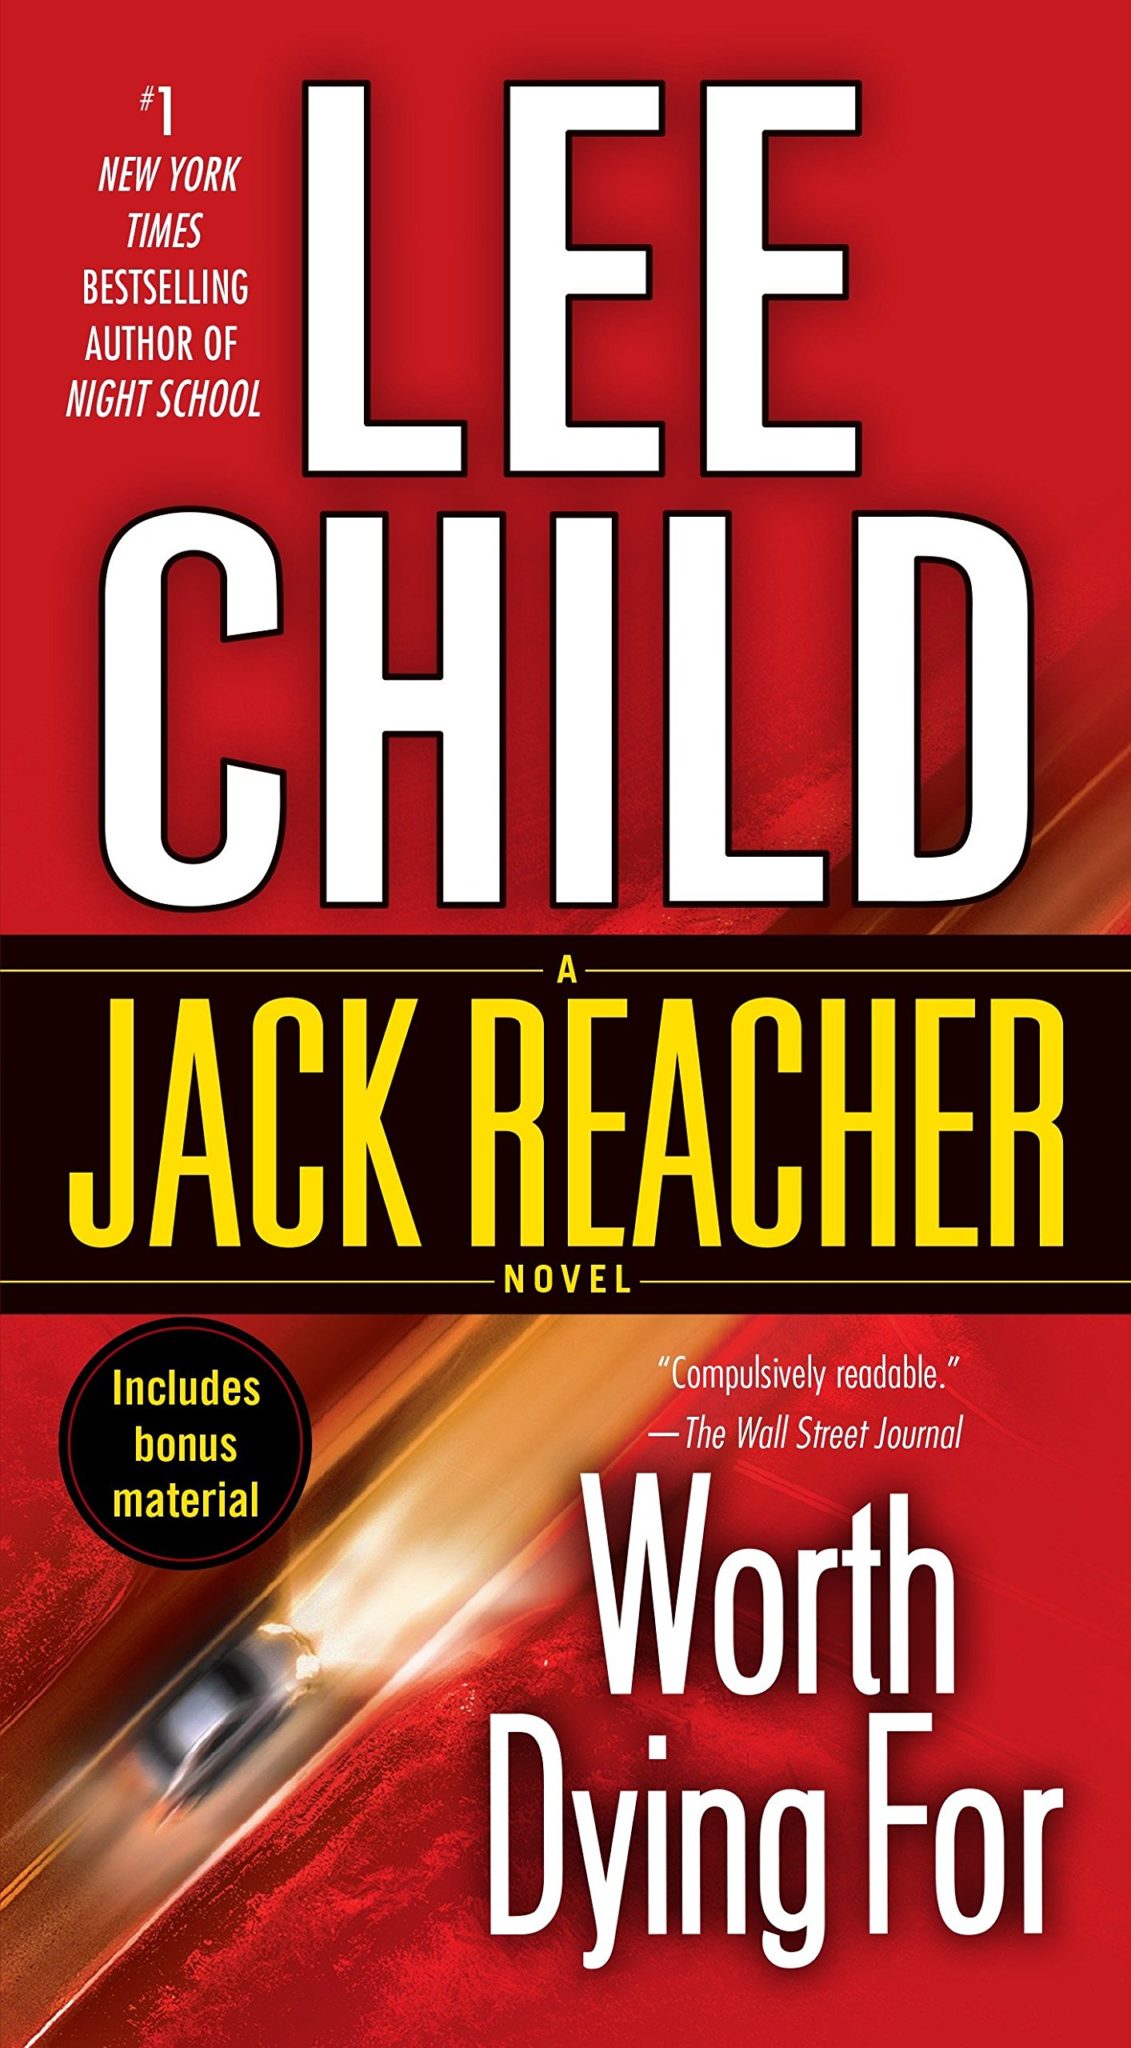 L'elenco completo dei libri di Jack Reacher in ordine